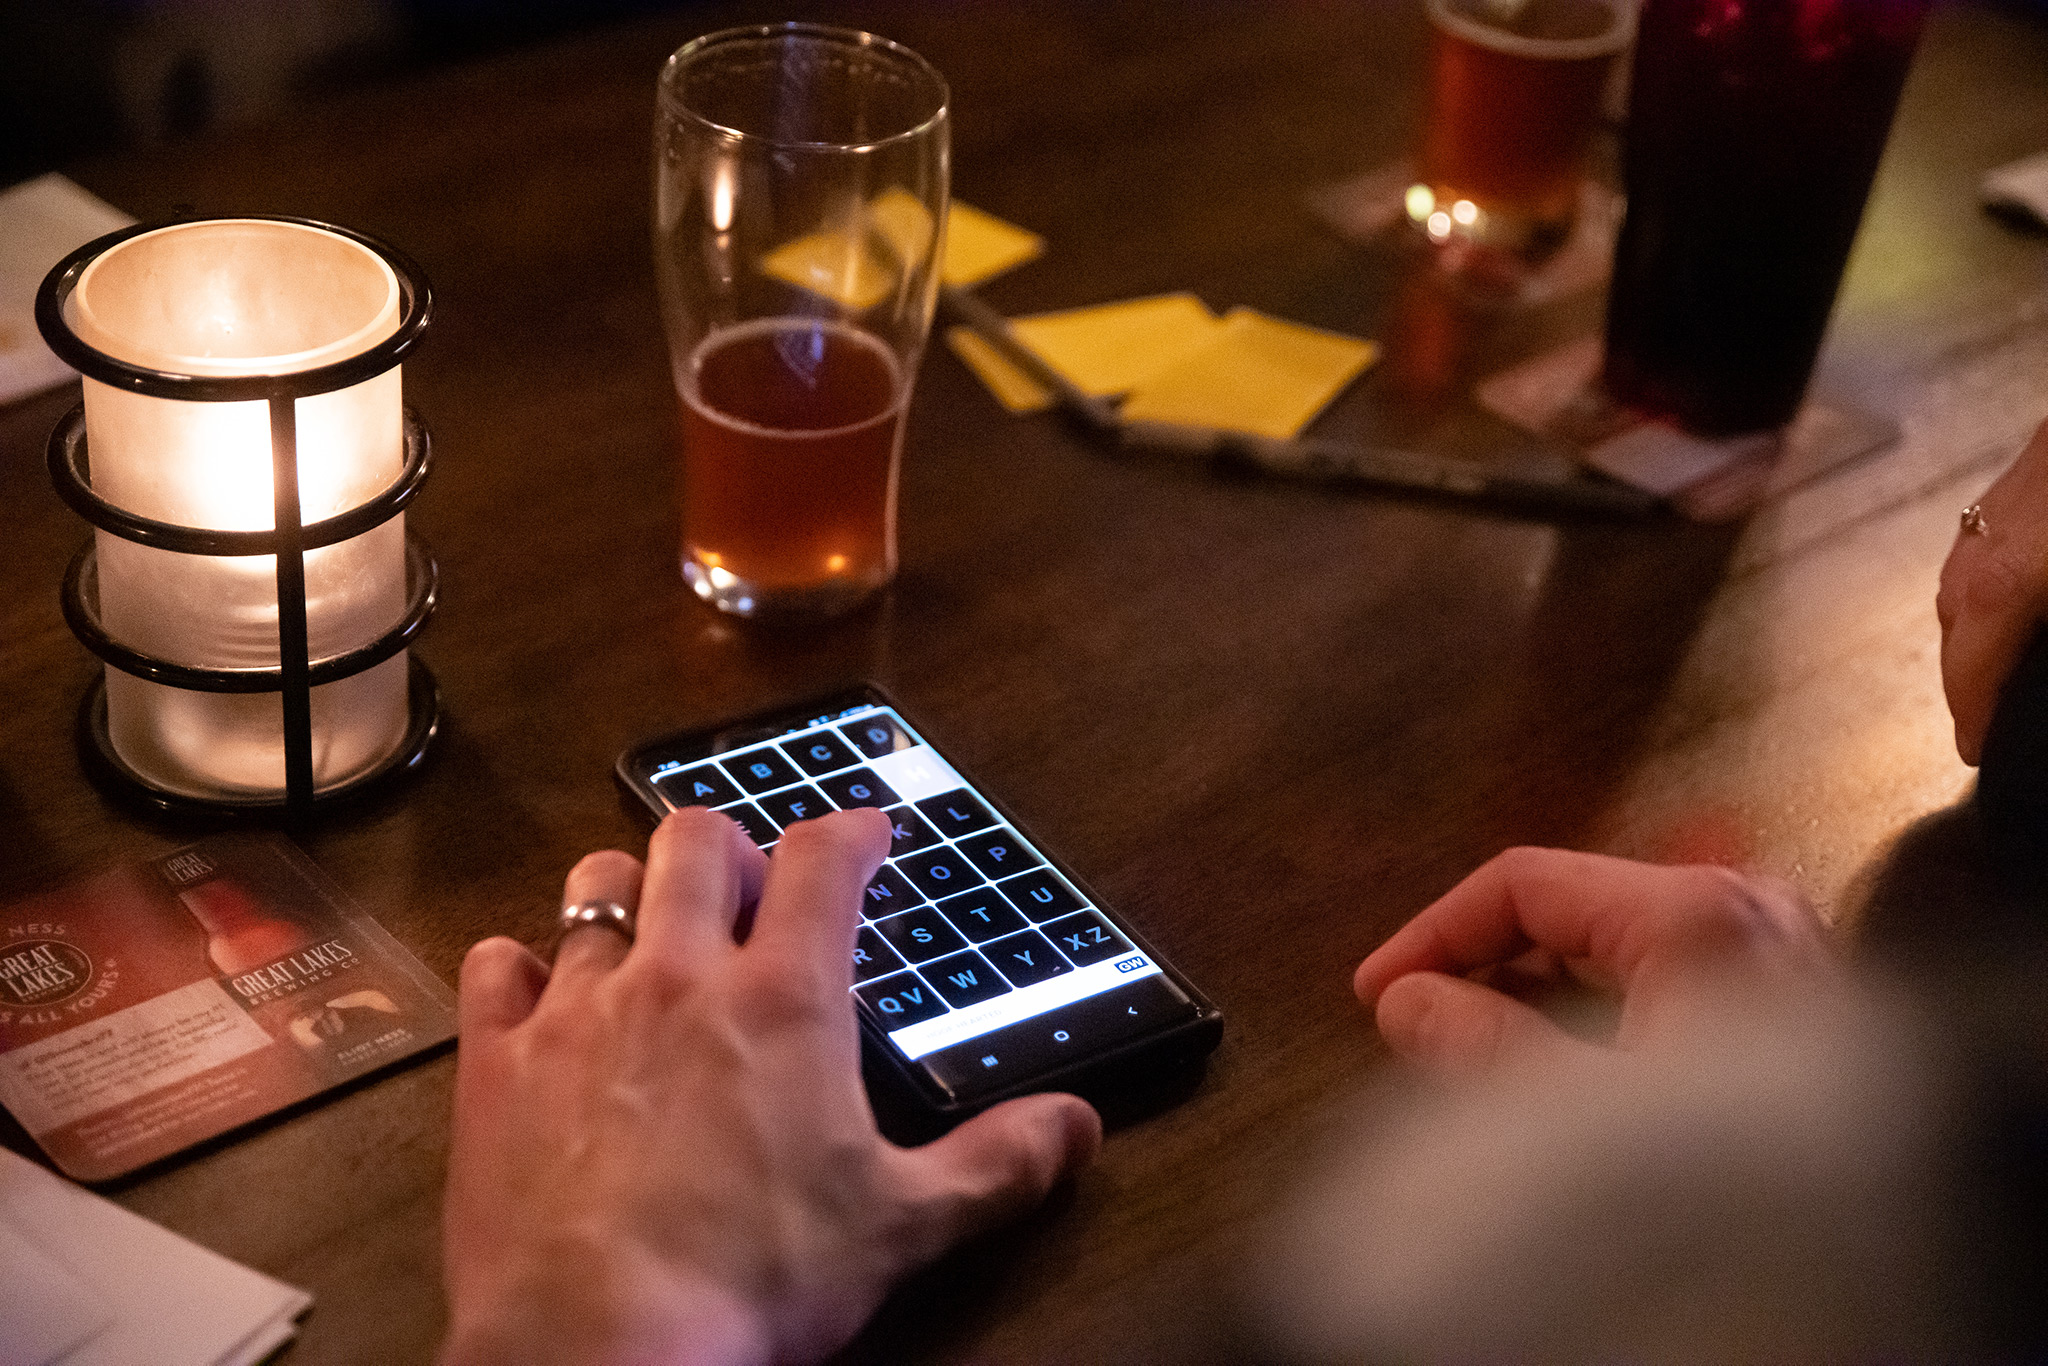 U Pick 6 Pub Trivia smart phone on table